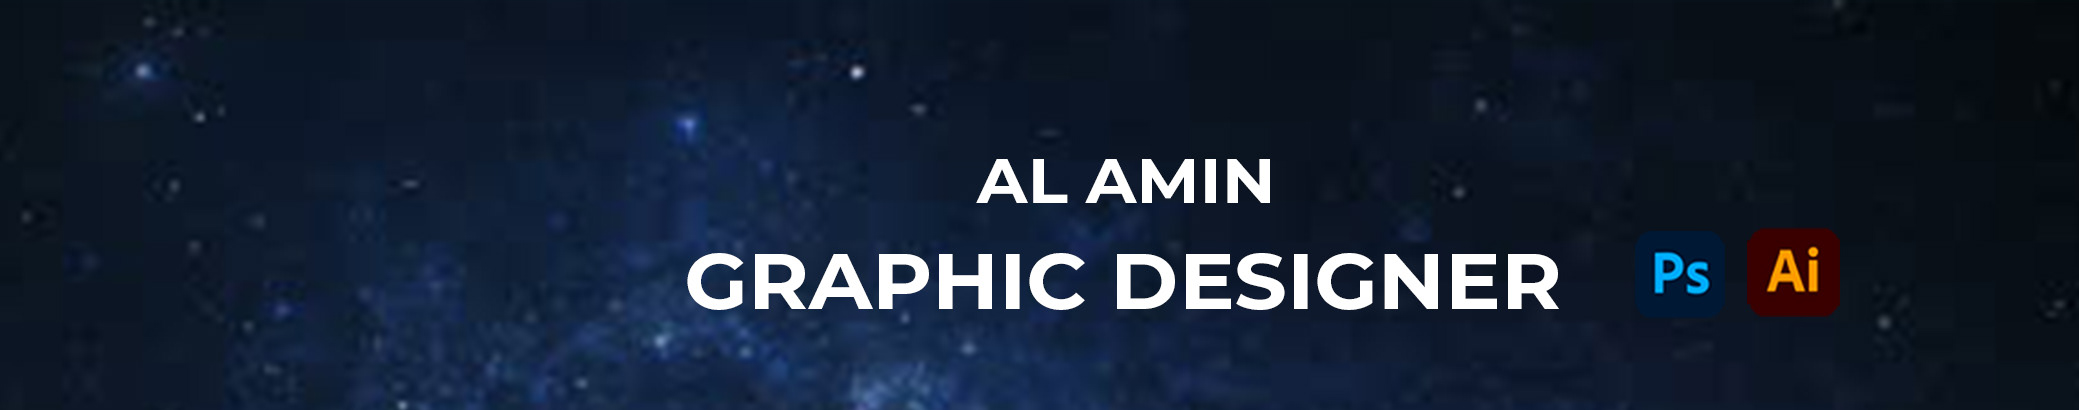 Al Amin's profile banner